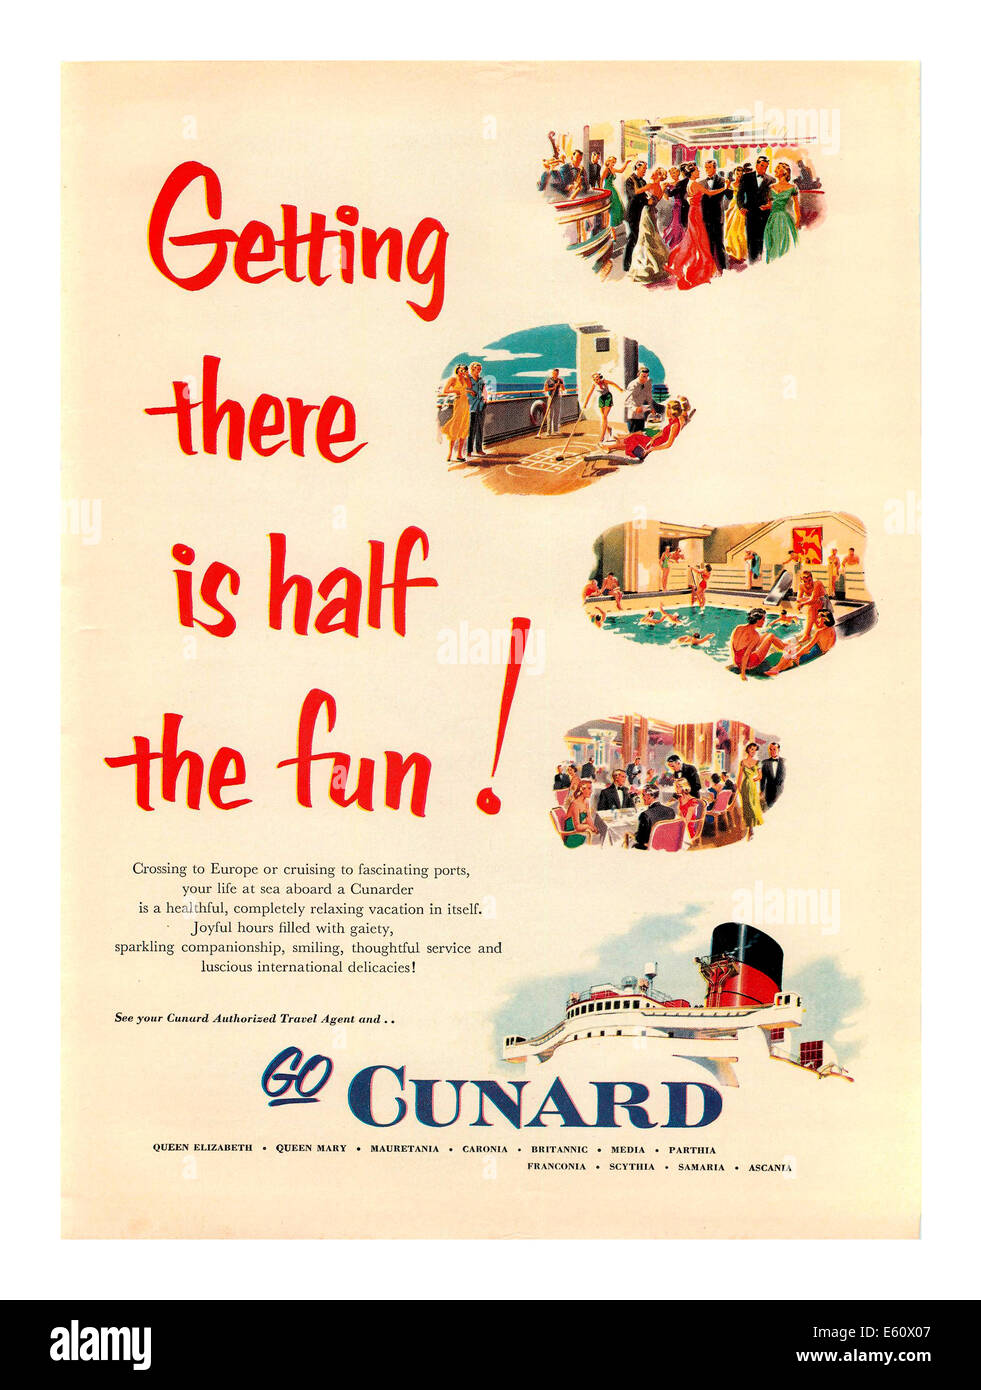 Cunard 1950, bateau de croisière d'époque, affiche de la ligne Cunard « s'y rendre est la moitié du plaisir » Banque D'Images